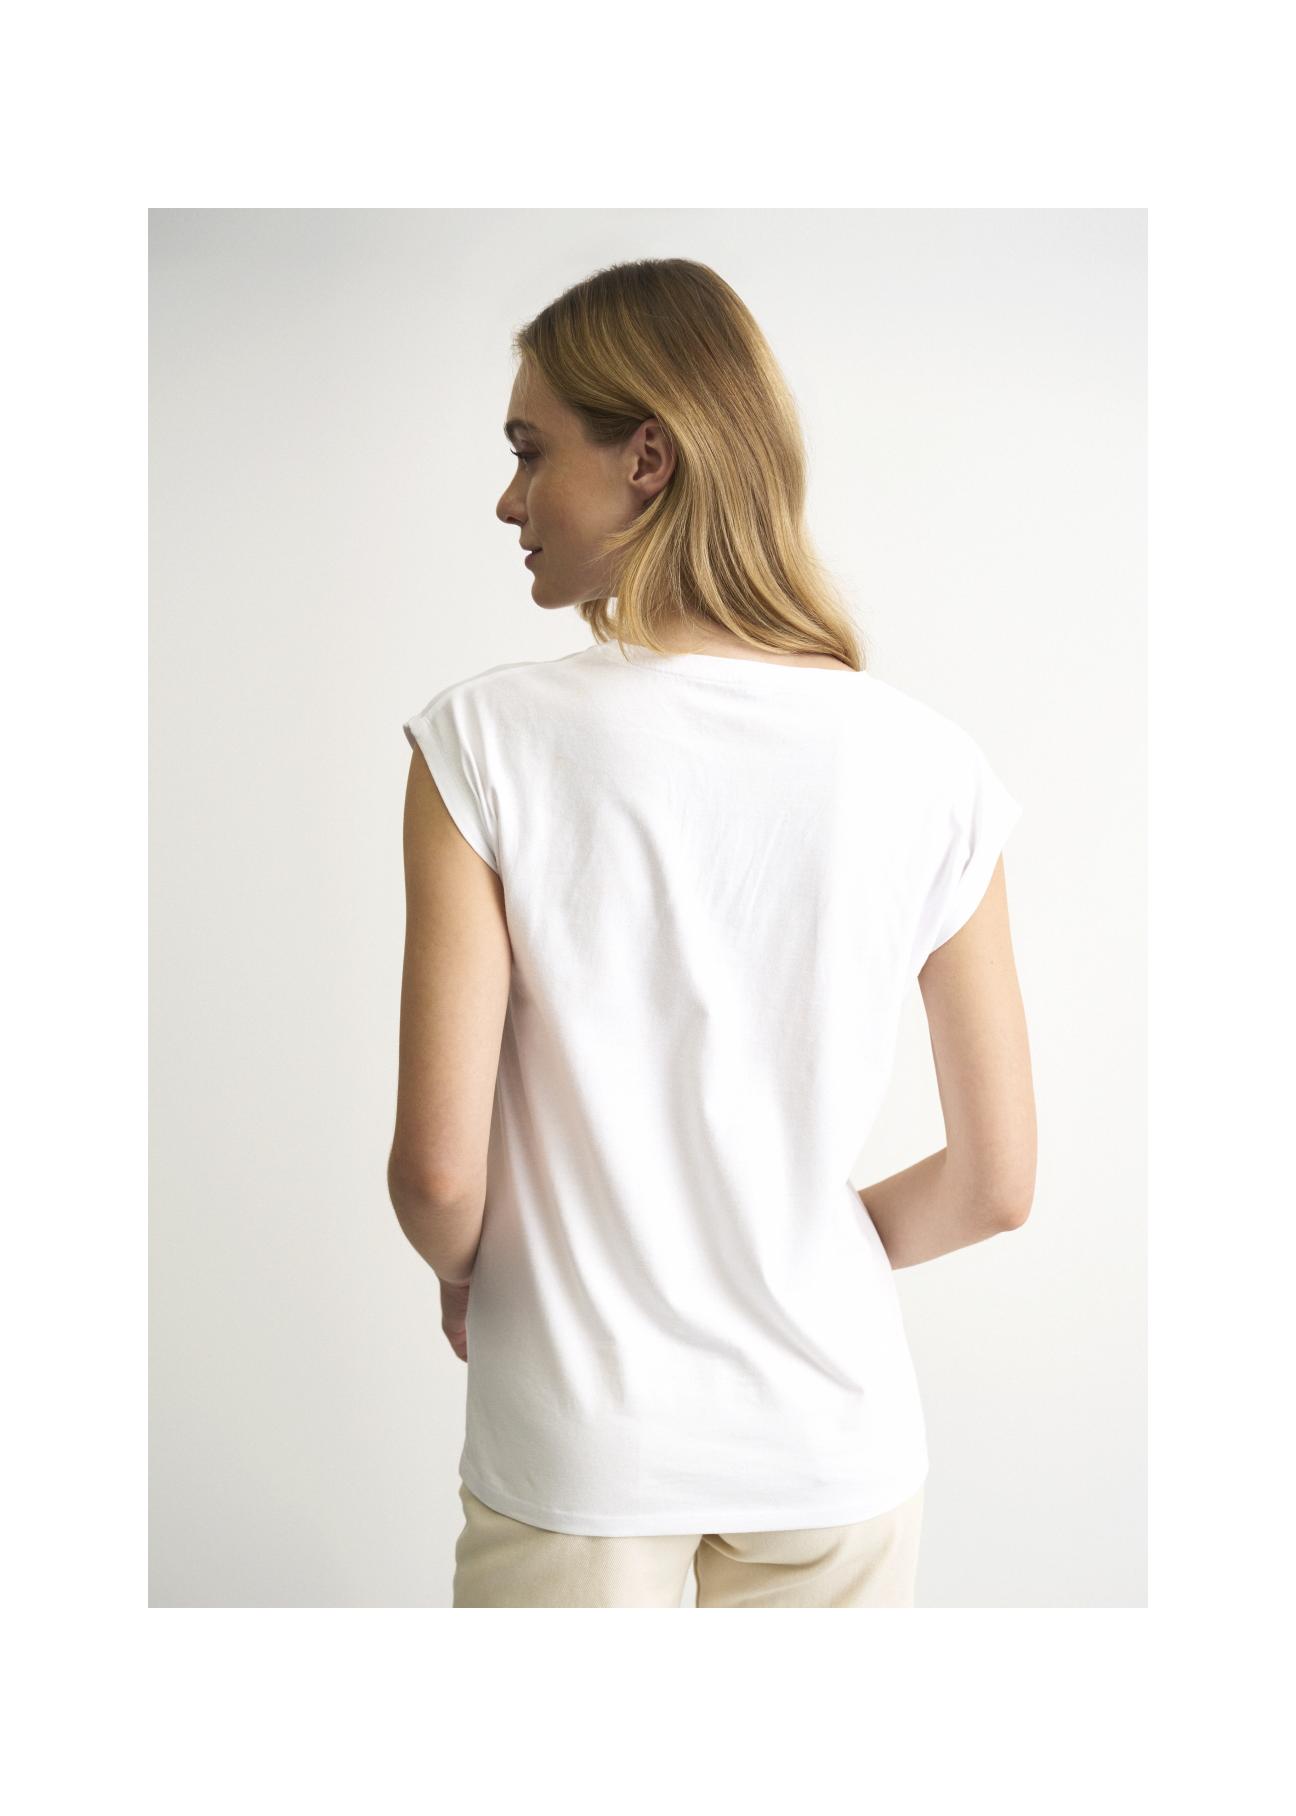 Biały T-shirt ze złotym nadrukiem damski TSHDT-0087-11(W22)-05